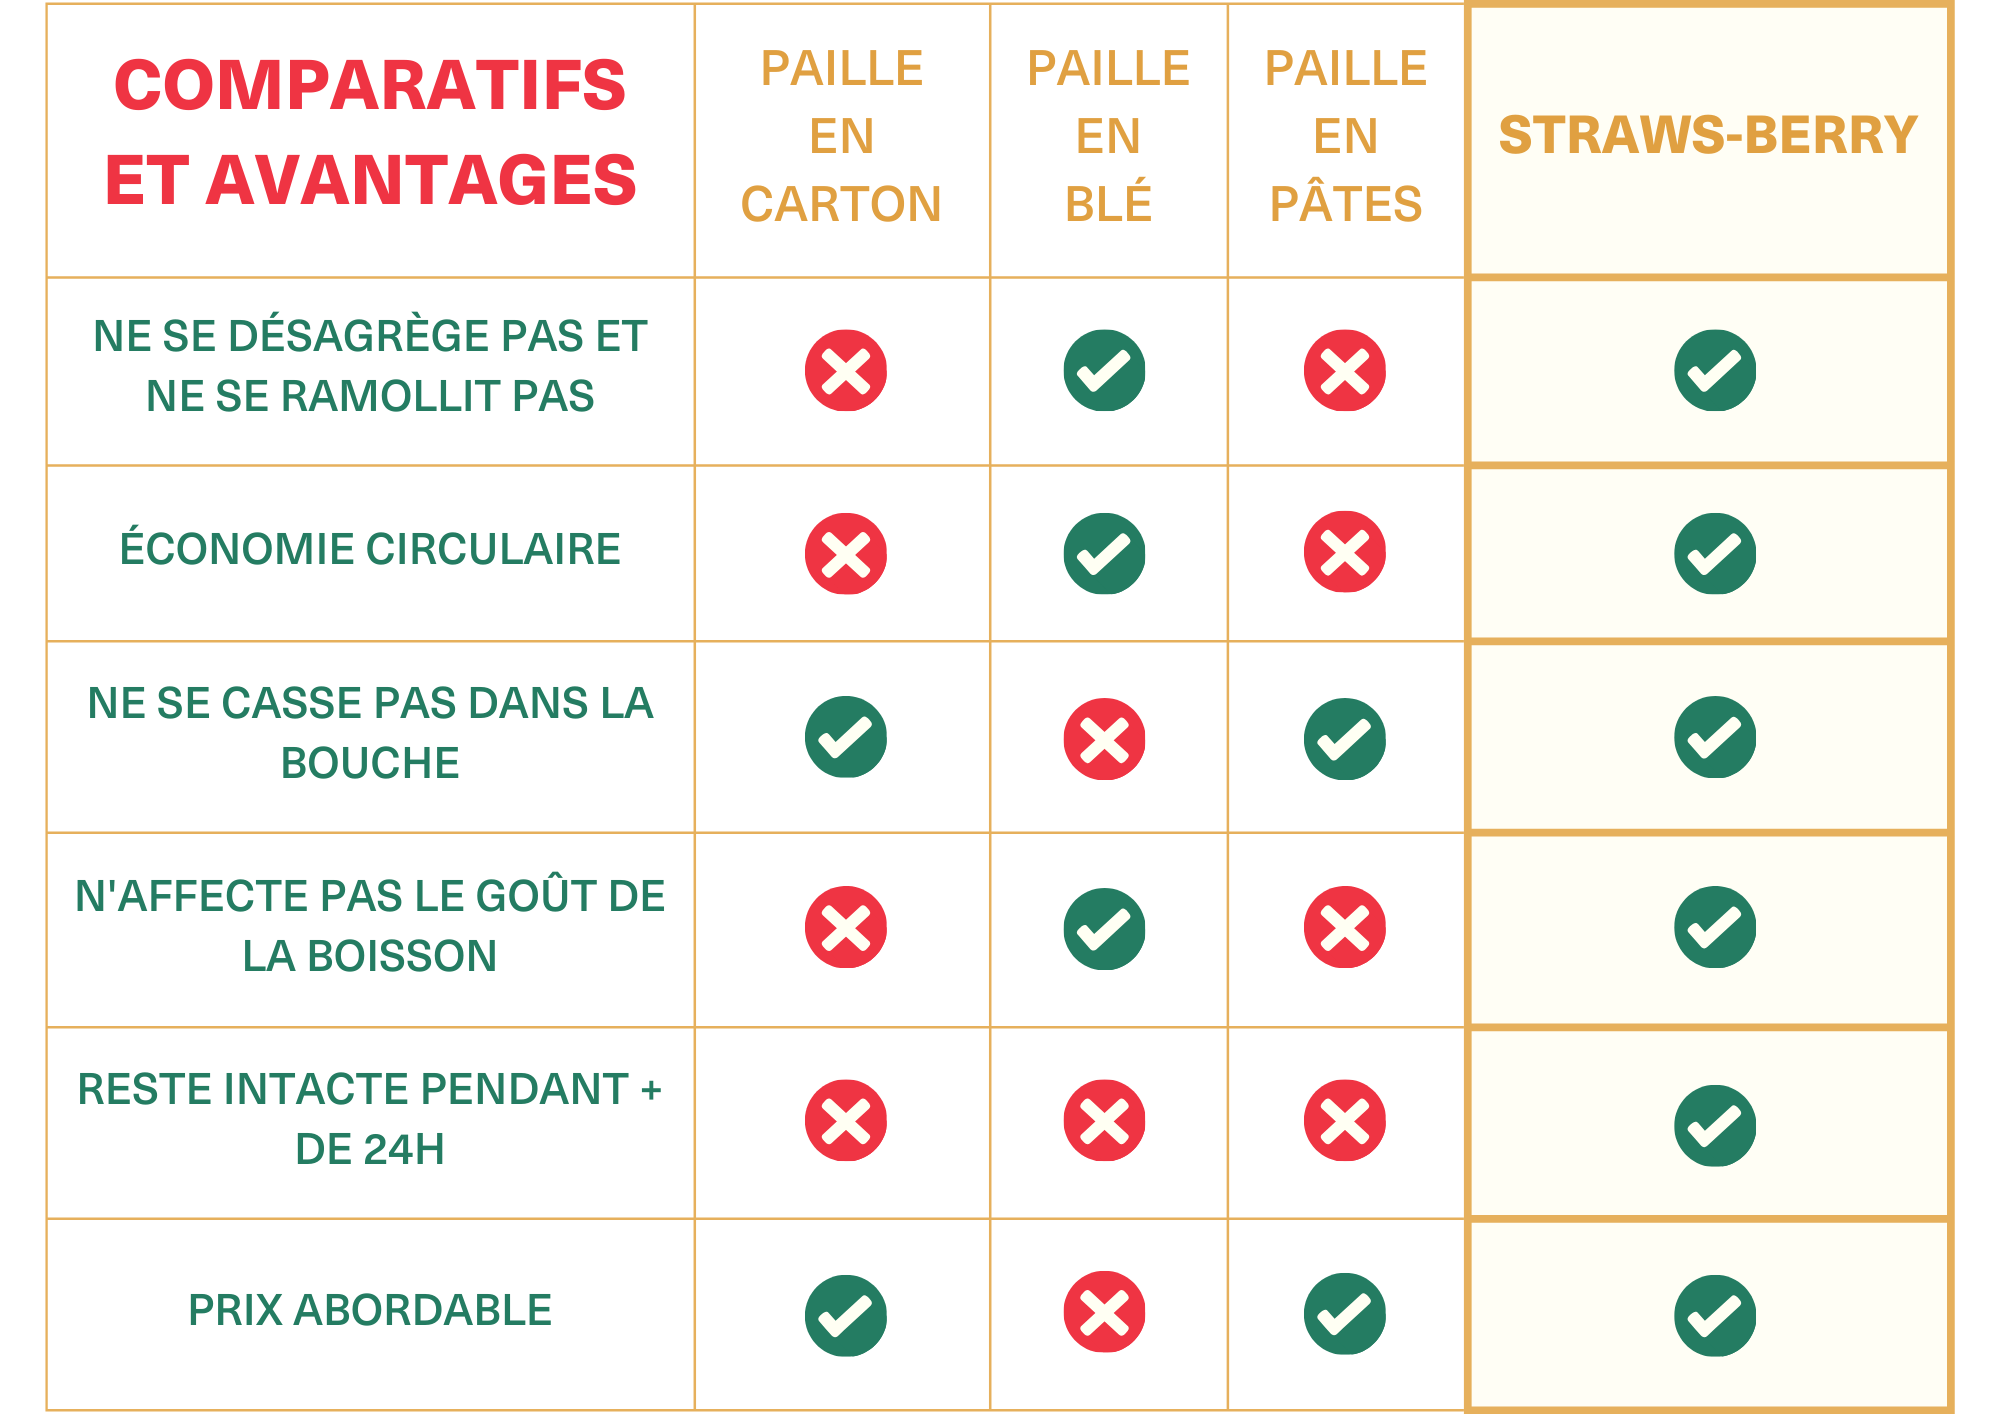 Comparatifs et avantages Straws-berry